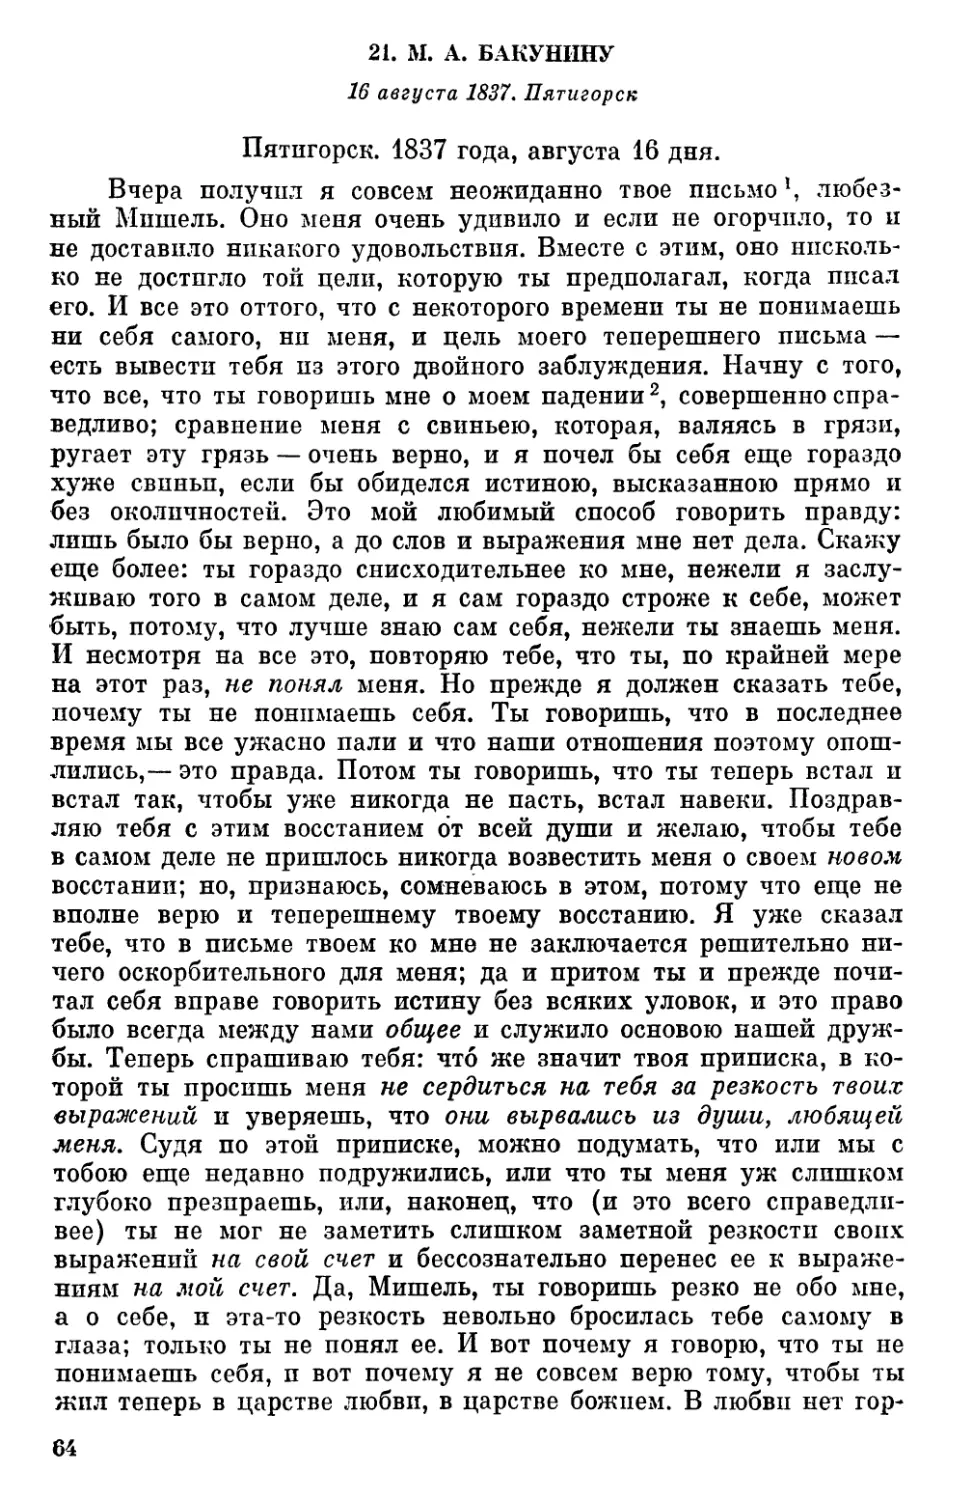 21. М. А. Бакунину. 16 августа 1837